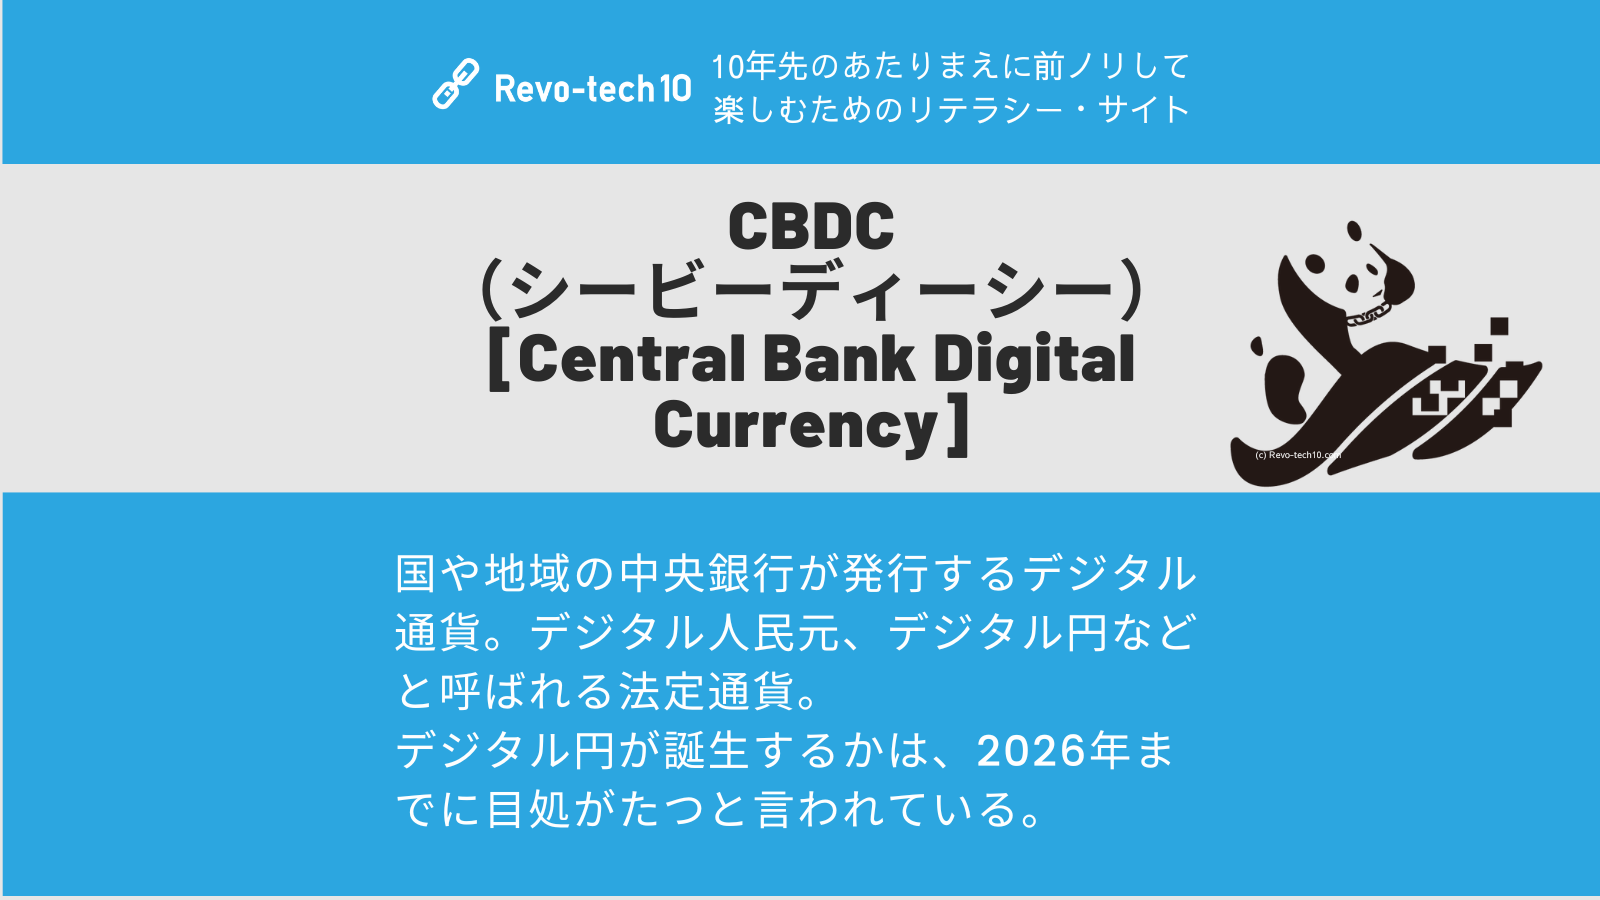 0062_CBDC（シービーディーシー）とは、国や地域の中央銀行が発行するデジタル通貨。デジタル人民元、デジタル円などと呼ばれる法定通貨。 デジタル円が誕生するかは、2026年までに目処がたつと言われている。